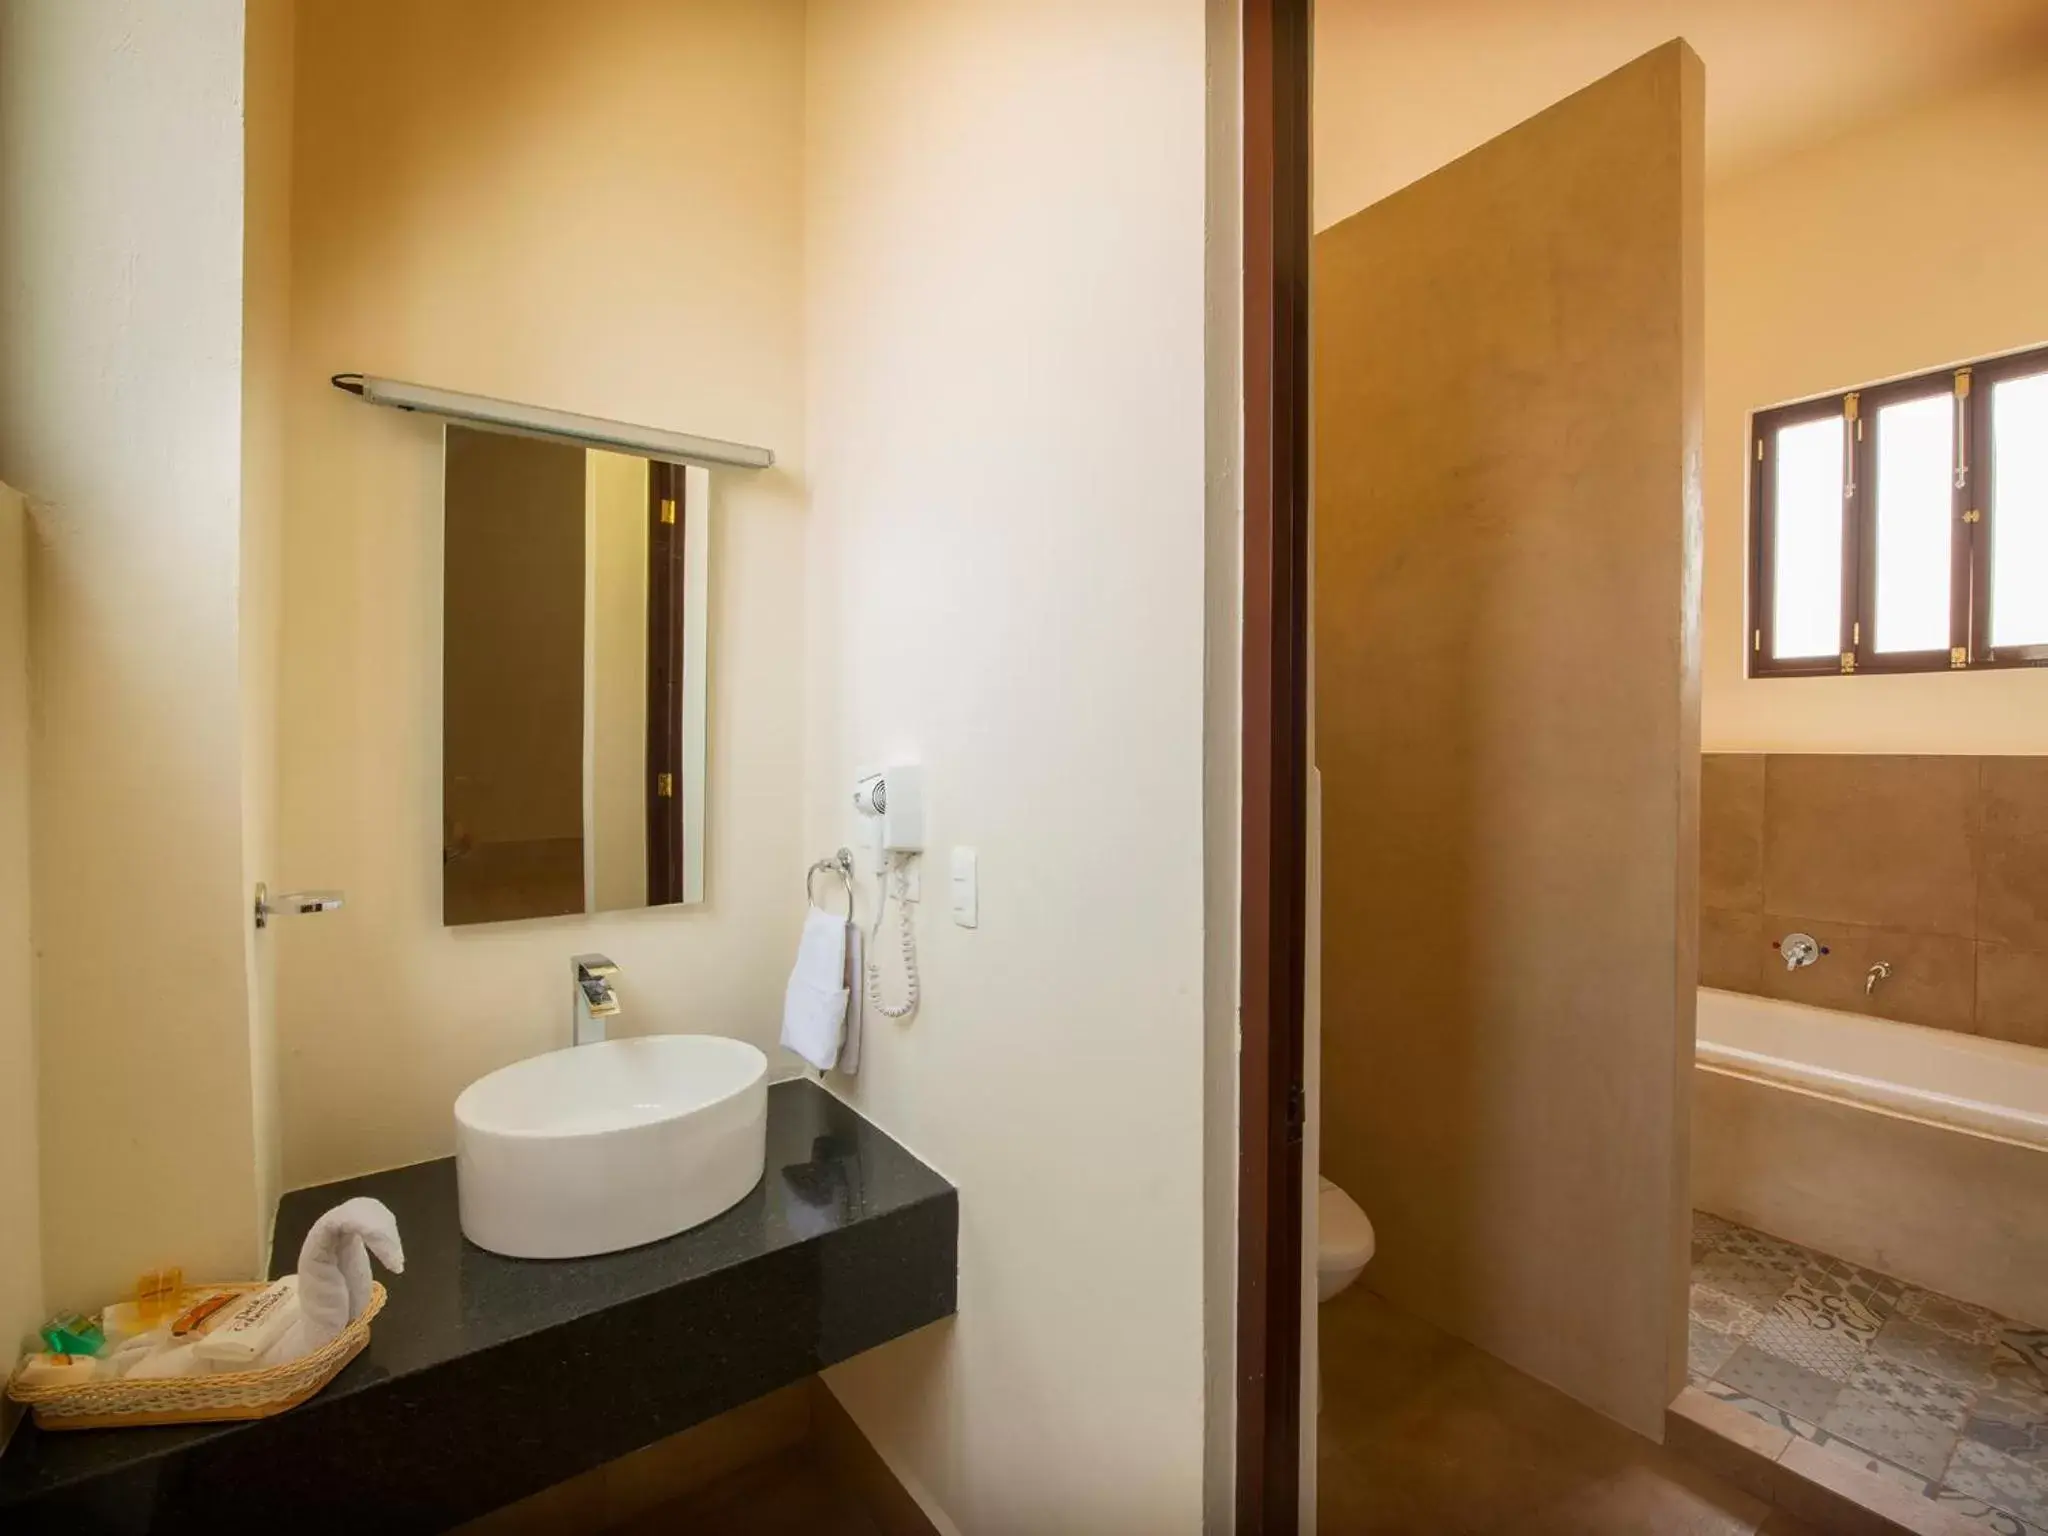 Bathroom in Hotel del Gobernador